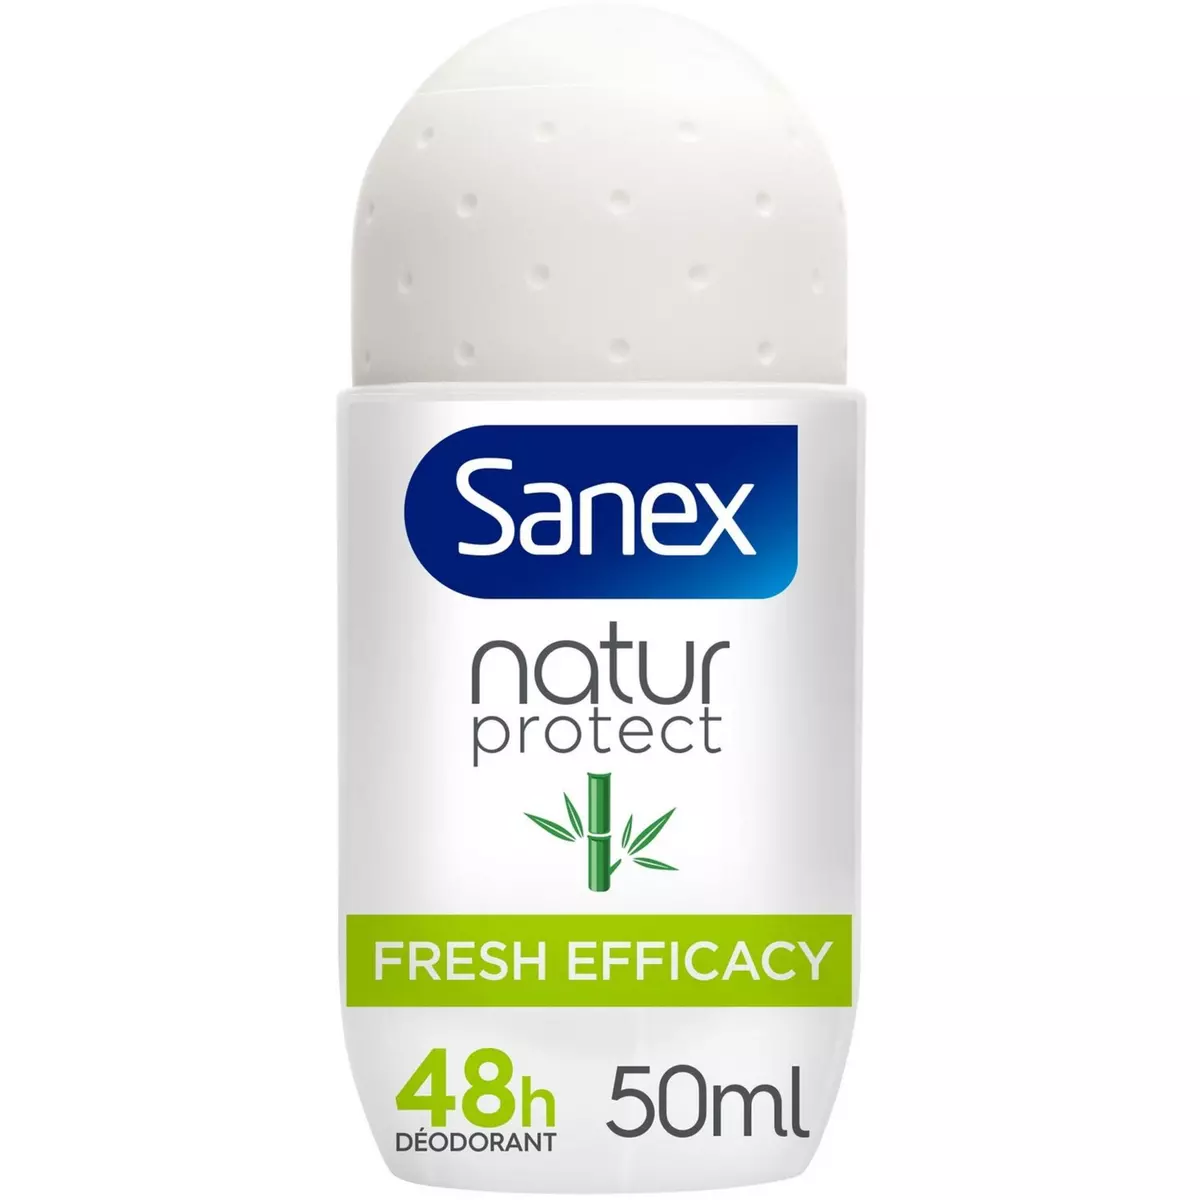 SANEX Natur protect déodorant bille 48h au bambou naturel 50ml